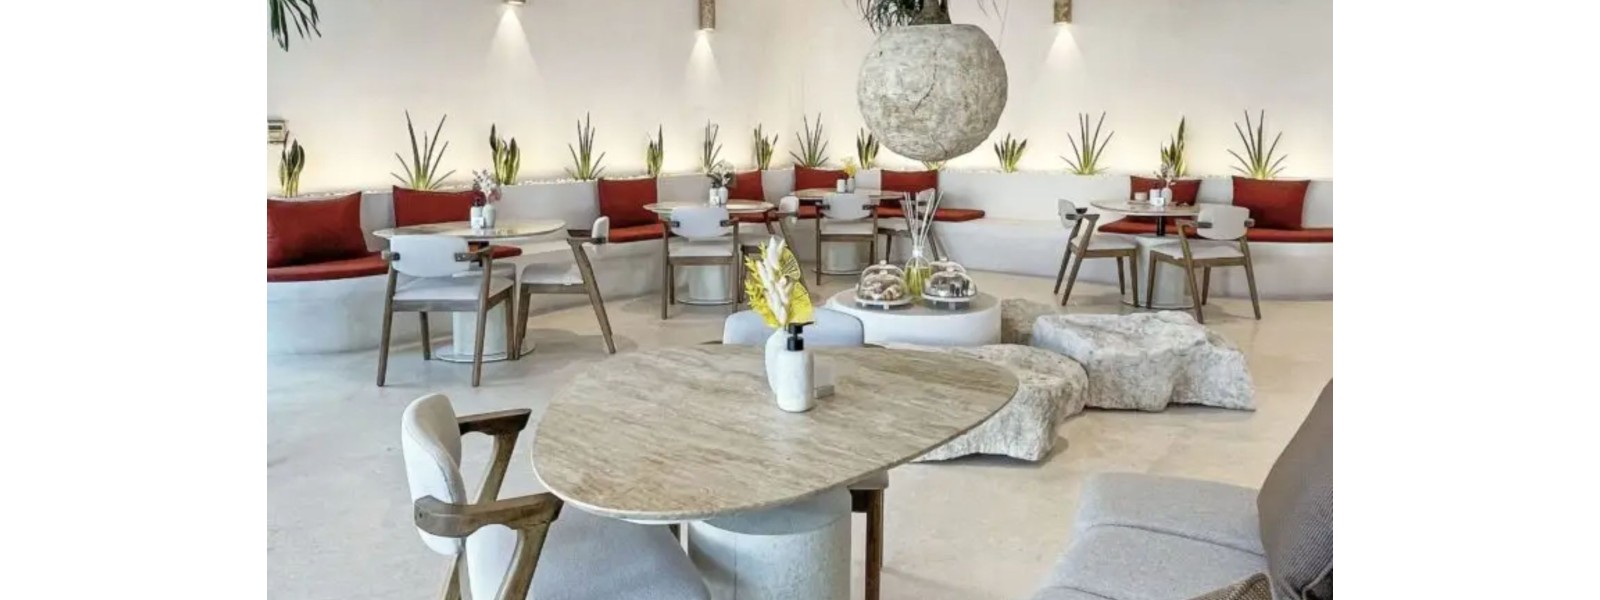 銅鑼灣設有40人座位擁有多個打卡點附近大量Office客人及旅客消費Cafe資產轉讓